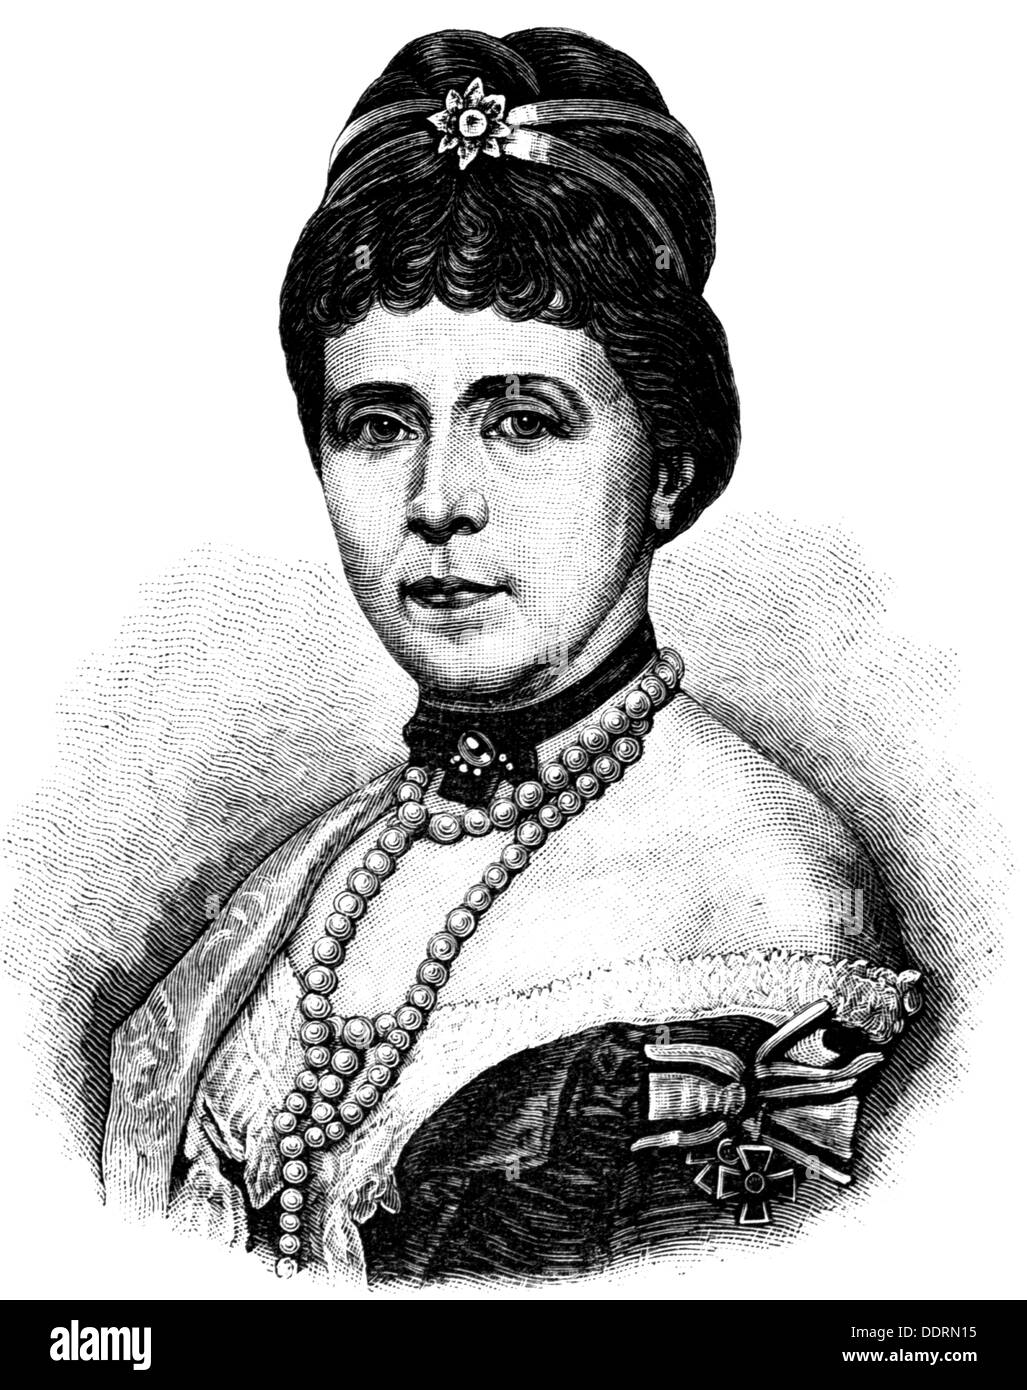 Augusta Marie, 30.9.1811 - 7.1.1890, Imperatrice tedesca 18.1.1871 - 9.3.1888, Portrait, 1829, incisione in legno, 19th secolo, Foto Stock